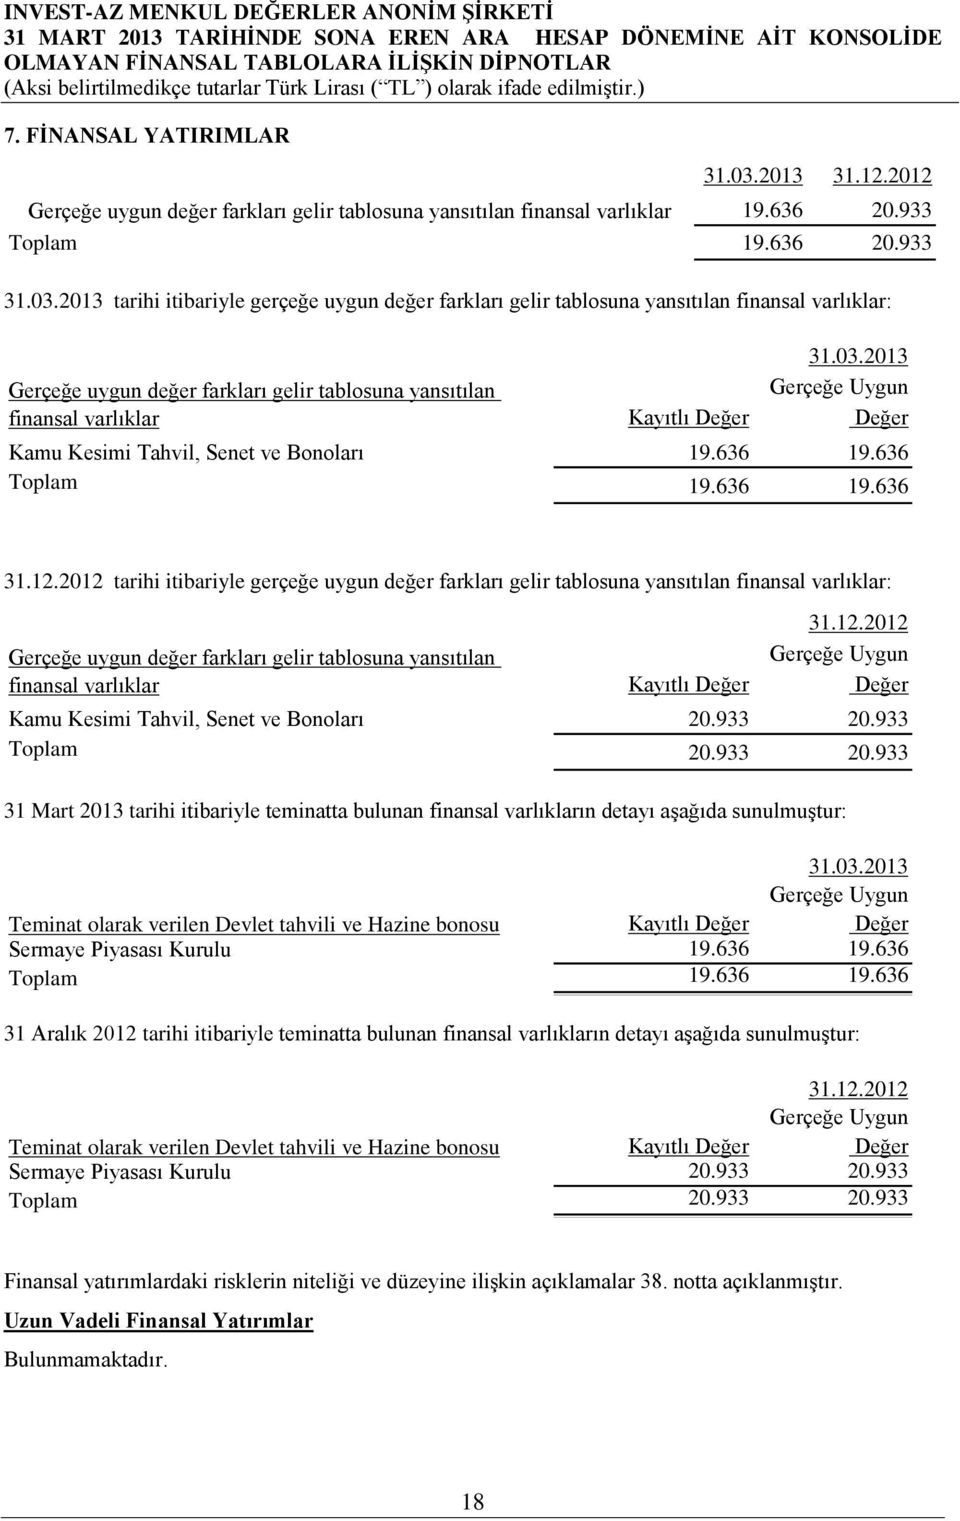 2013 tarihi itibariyle gerçeğe uygun değer farkları gelir tablosuna yansıtılan finansal varlıklar: Gerçeğe uygun değer farkları gelir tablosuna yansıtılan finansal varlıklar 31.03.